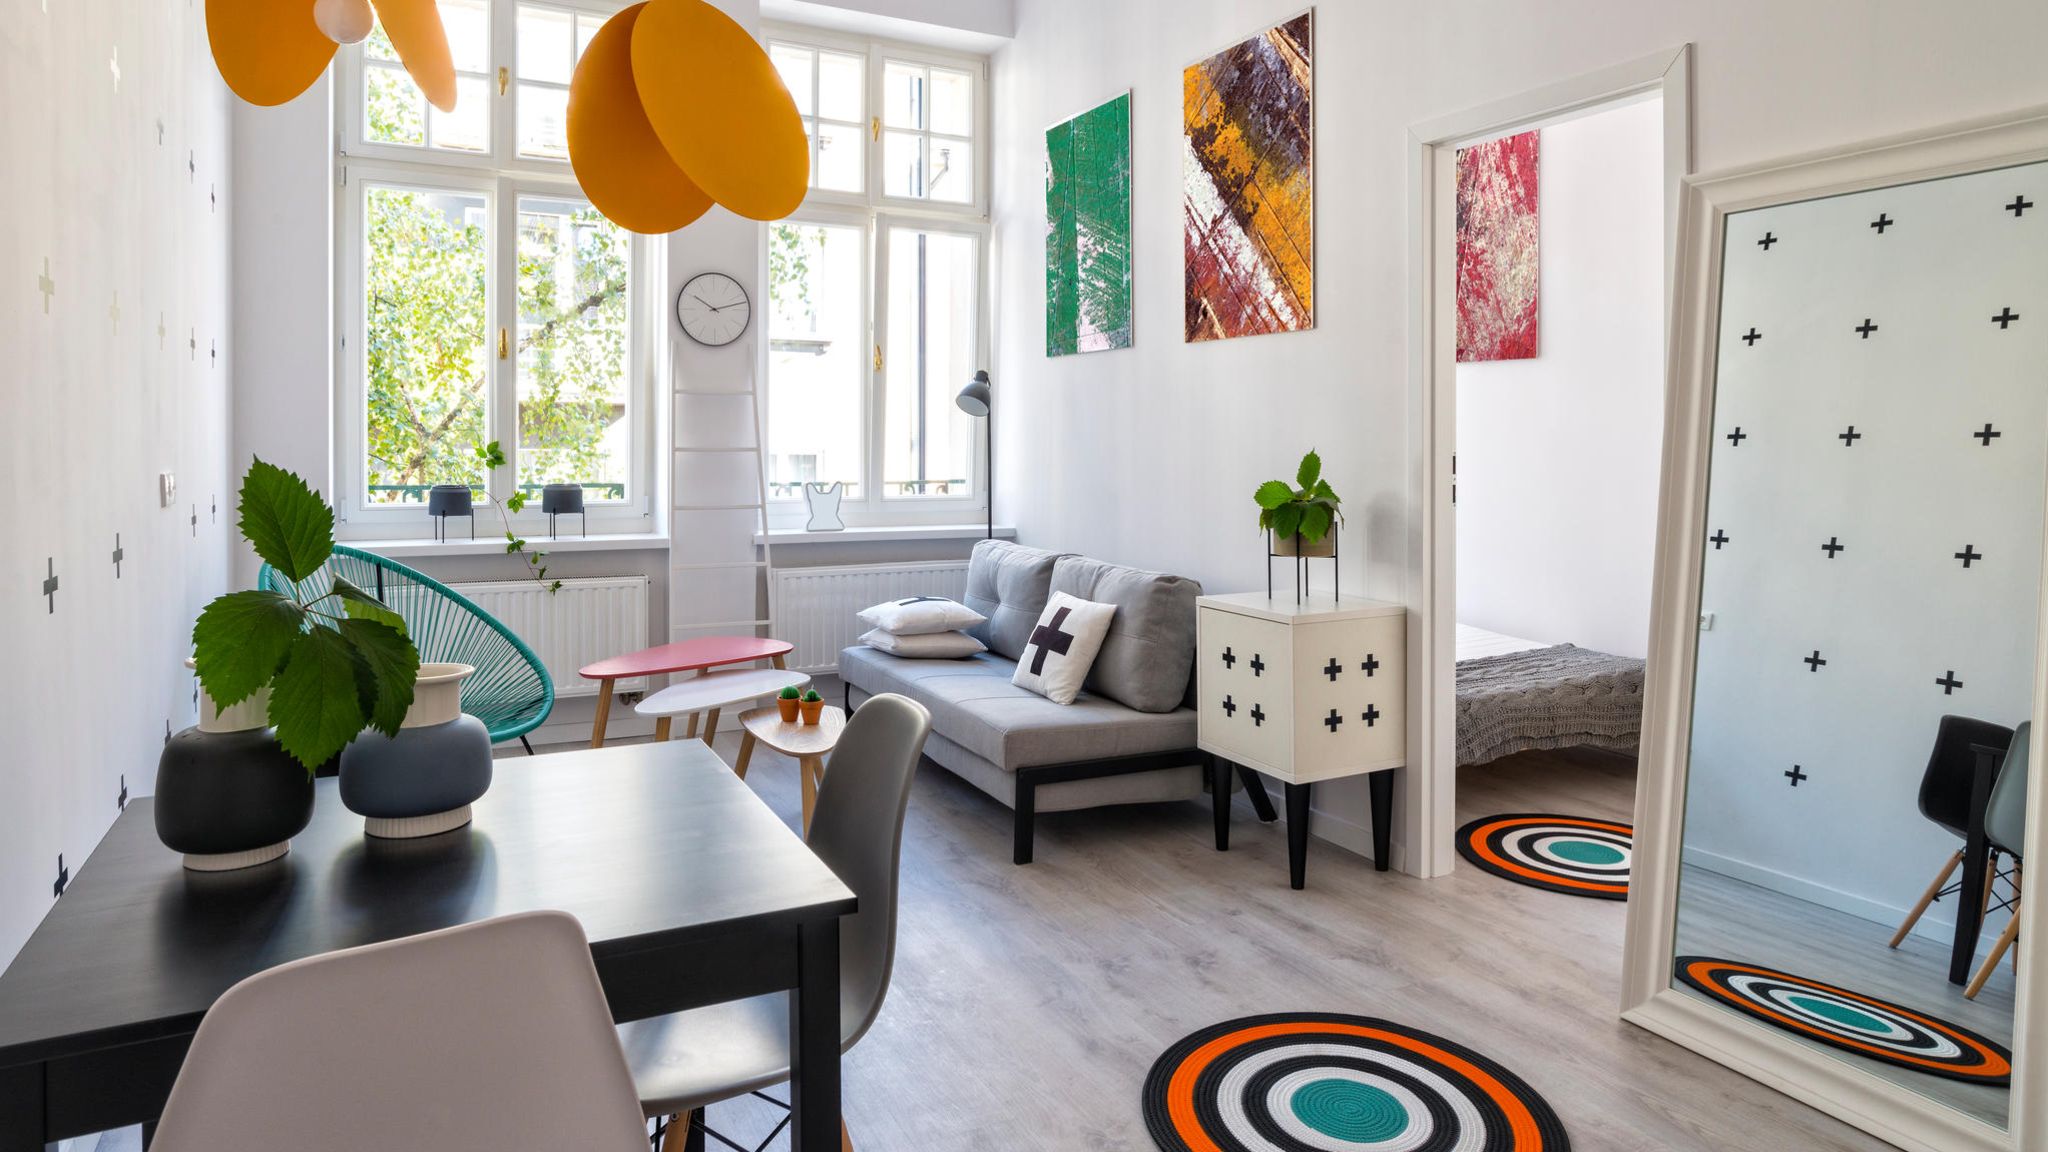 Kleine Wohnung einrichten Hilfreiche Tipps und Trends   STERN.de